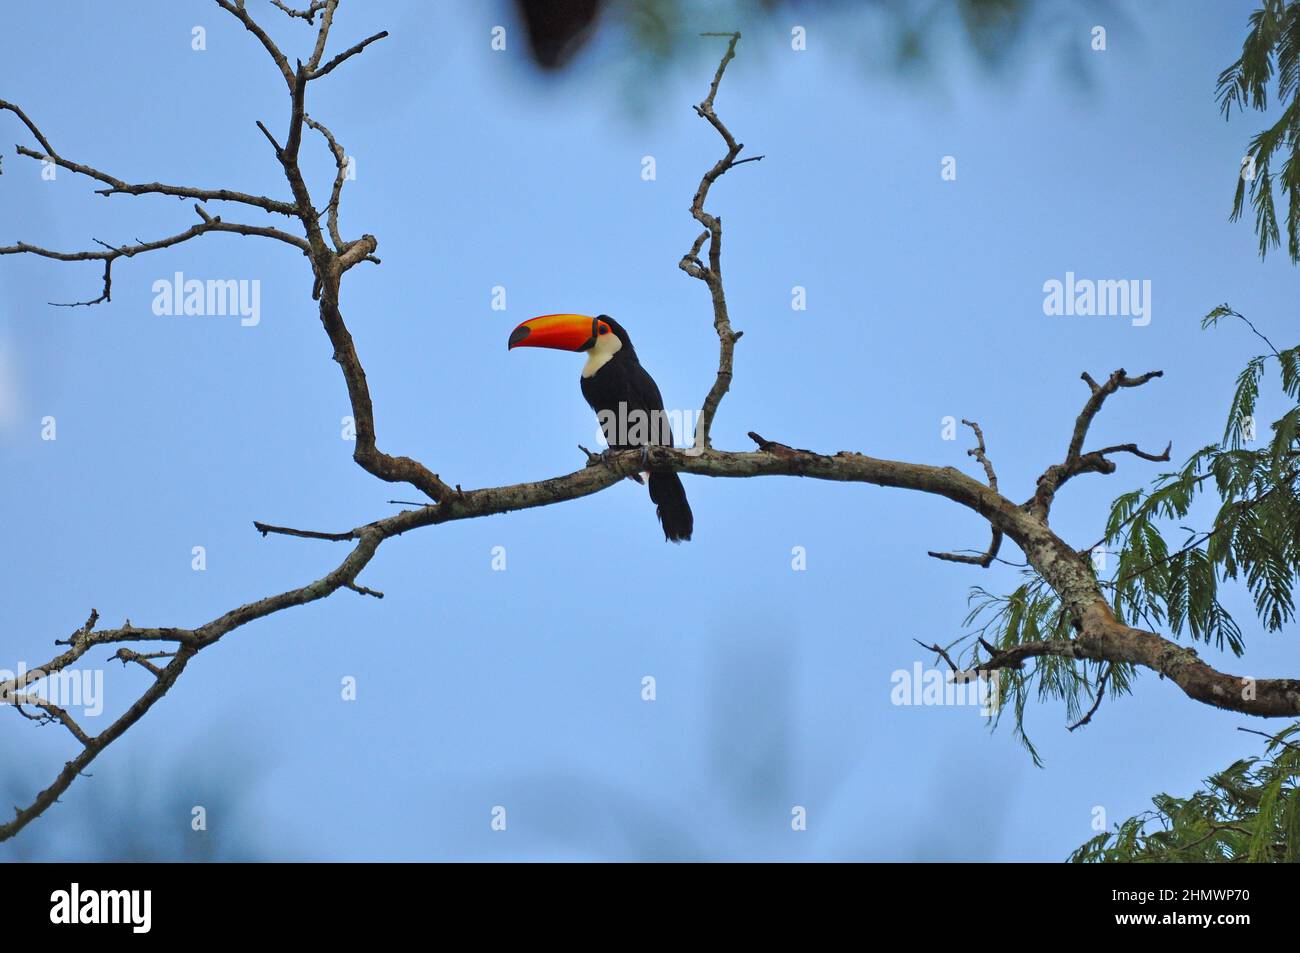 Toco Toucan (Ramphastos toco) perché sur une branche d'arbre, vue latérale. Prise aux chutes d'Iguazu, Argentine Banque D'Images